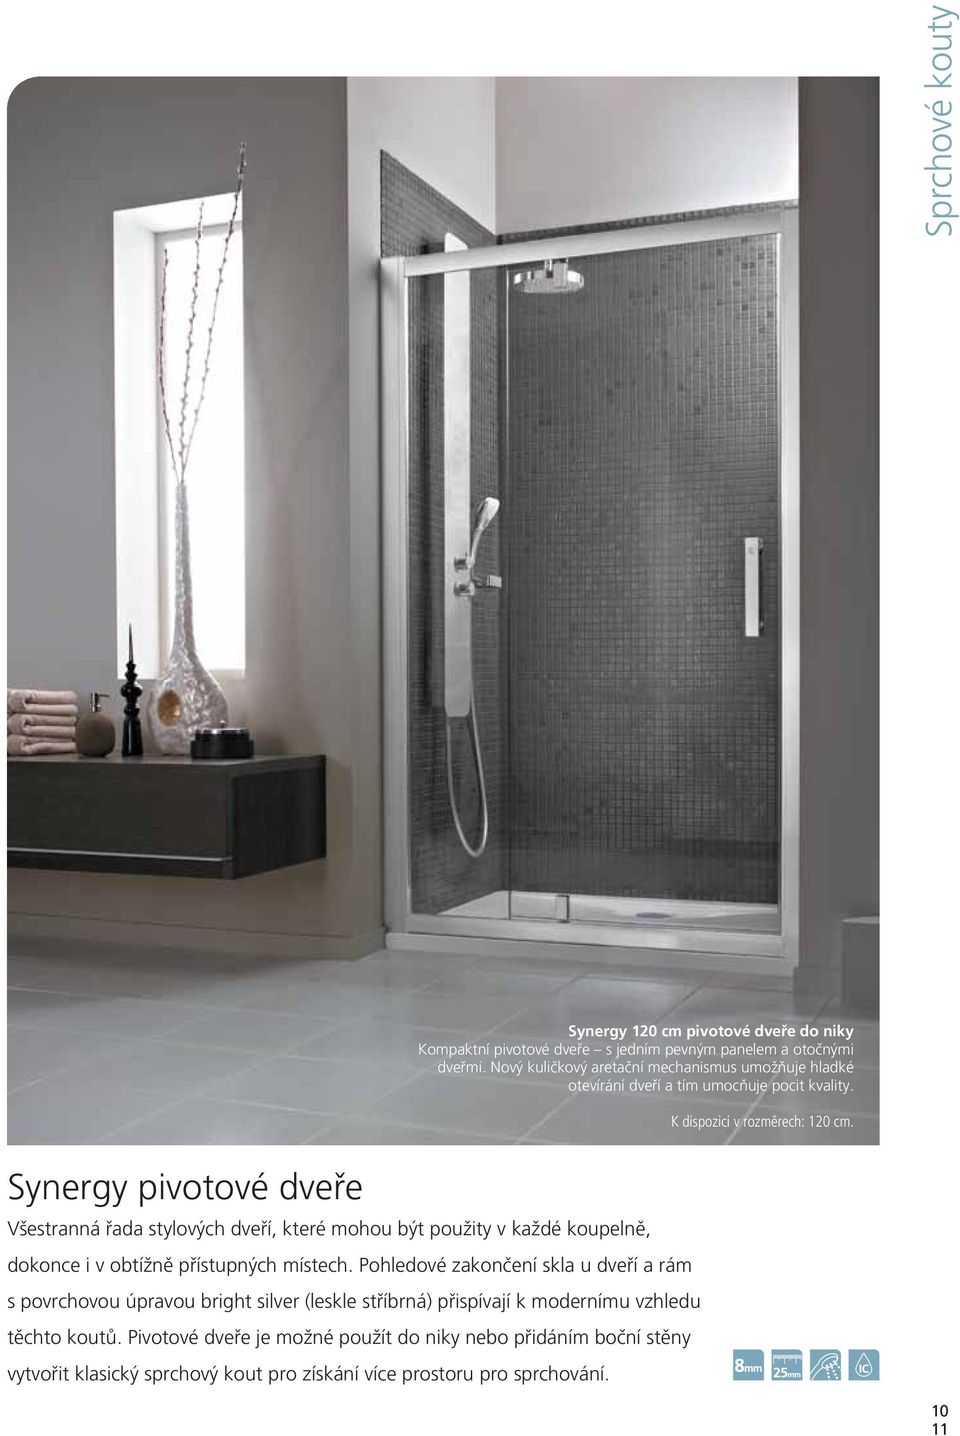 Synergy pivotové dveře Všestranná řada stylových dveří, které mohou být použity v každé koupelně, dokonce i v obtížně přístupných místech.